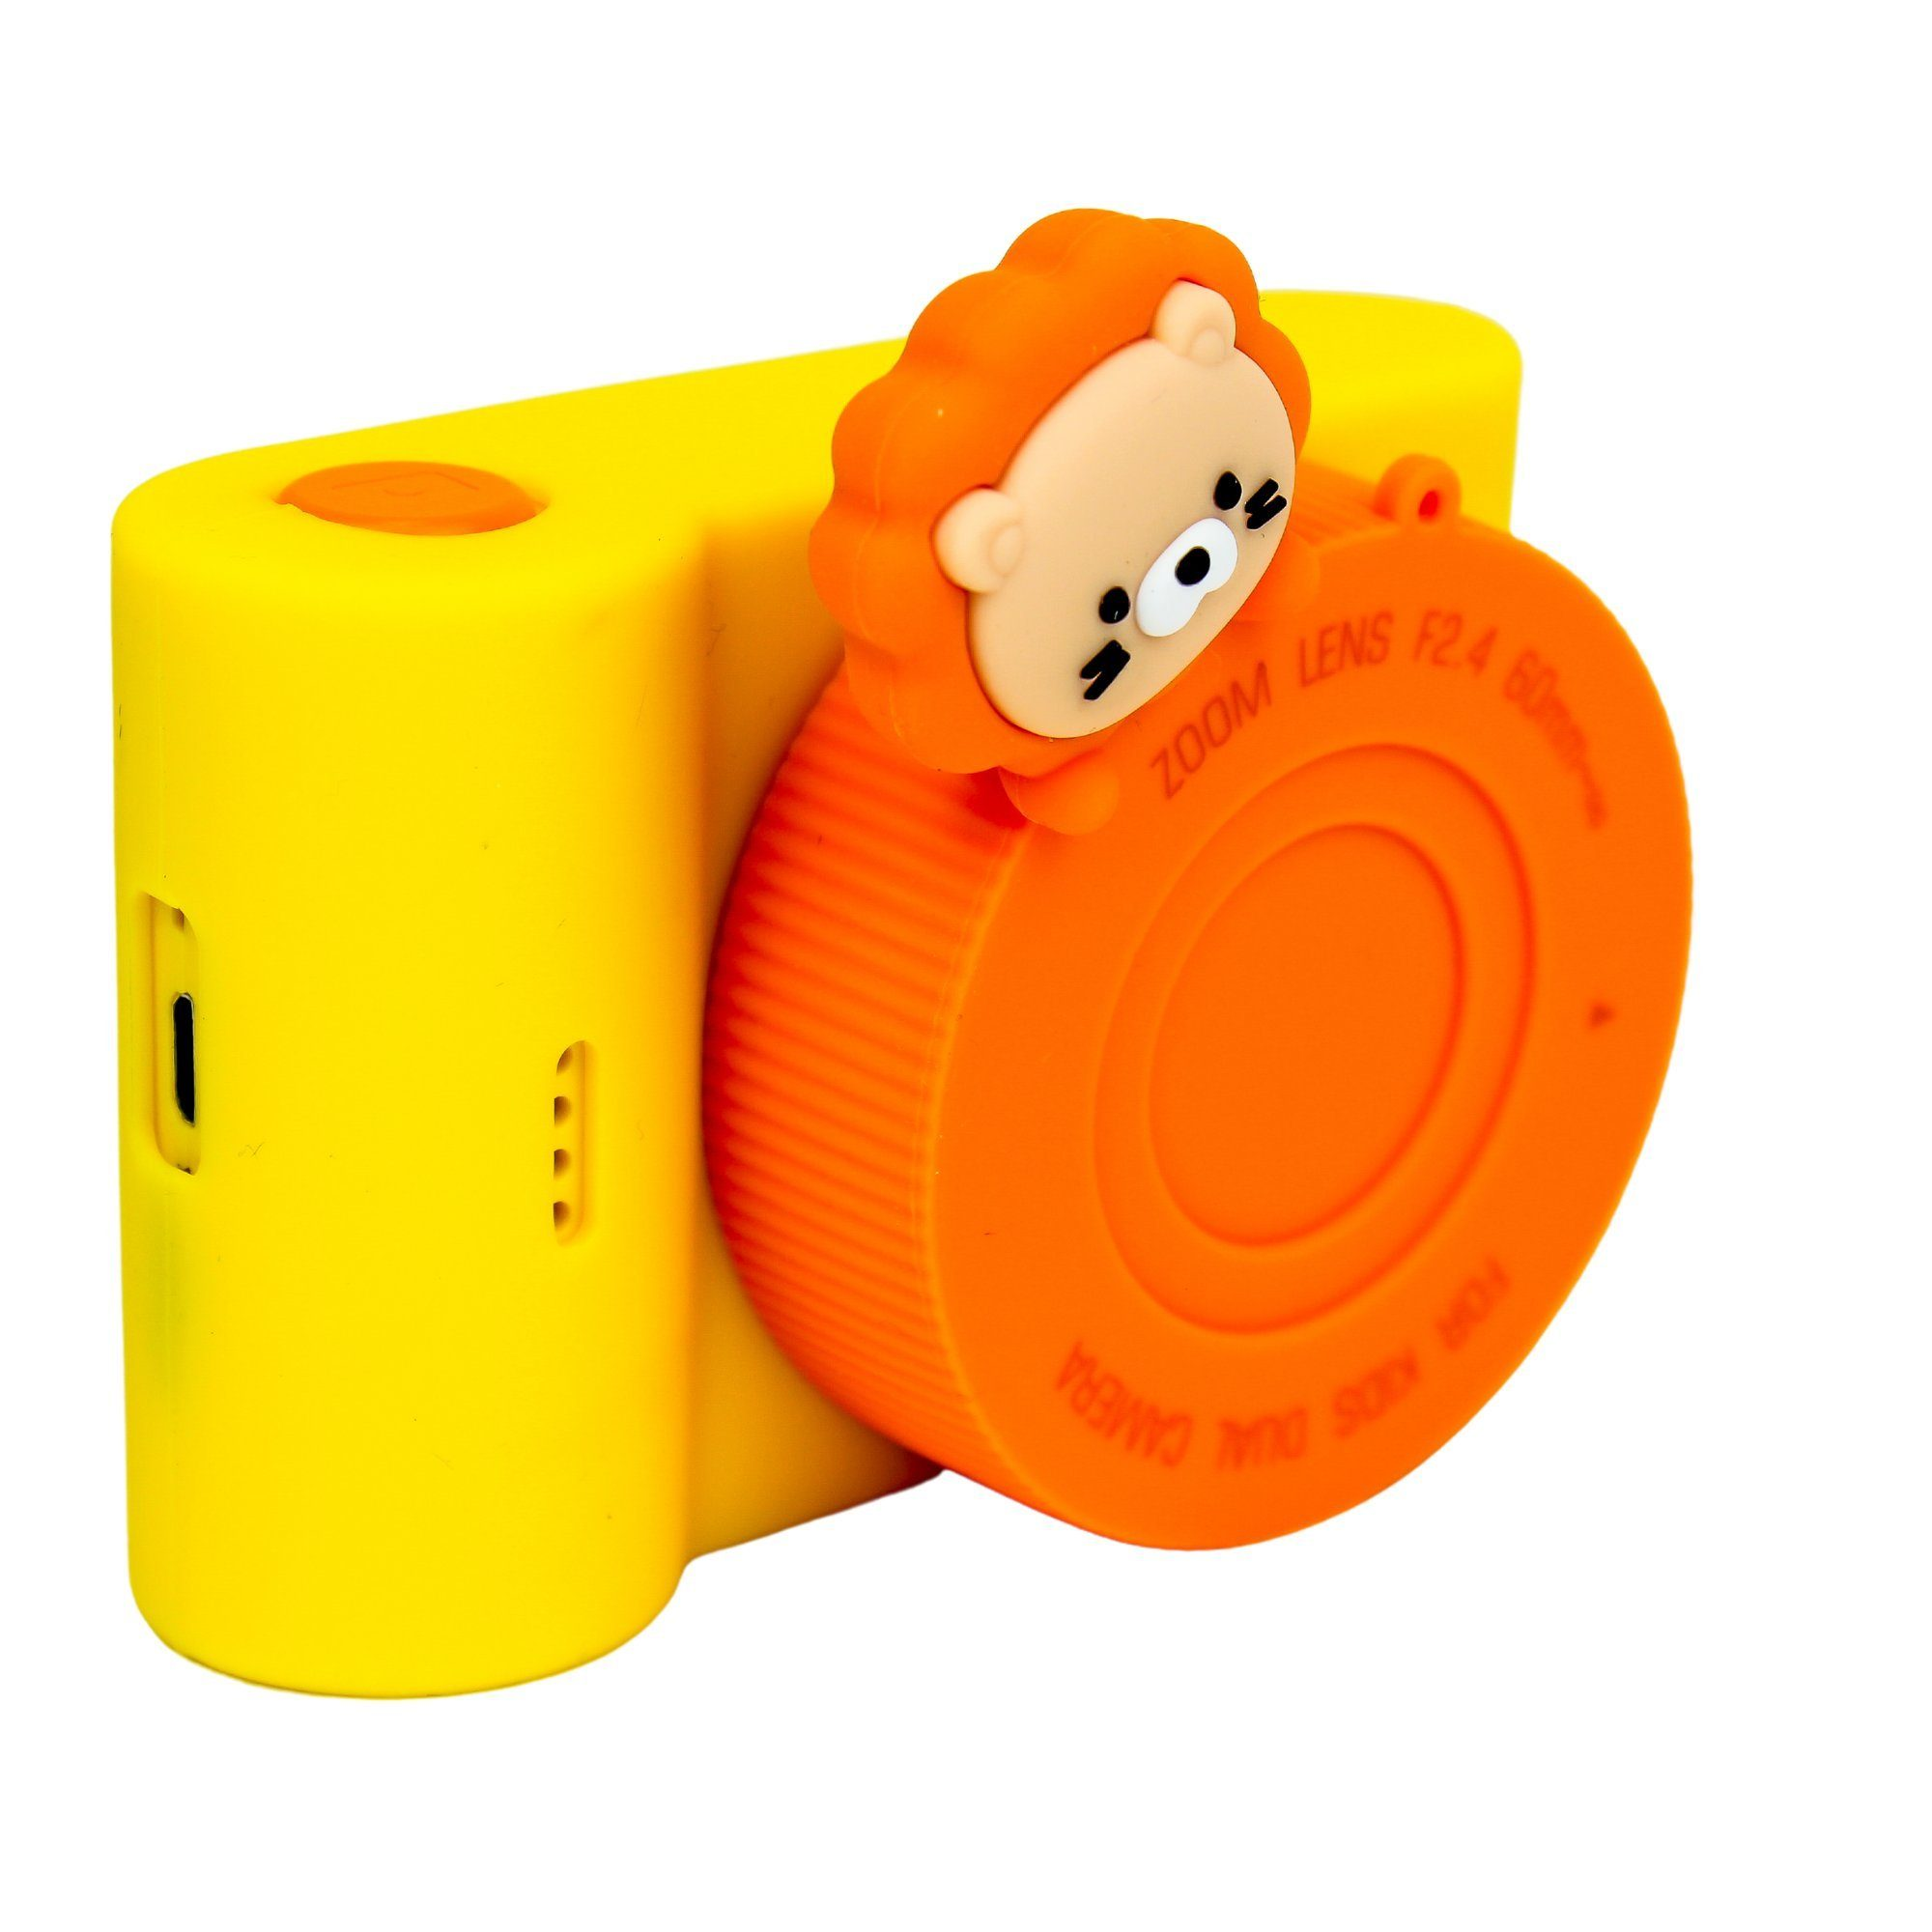 DOTMALL C5 Orange- KK886 Kinder-Digitalkamera Löwe